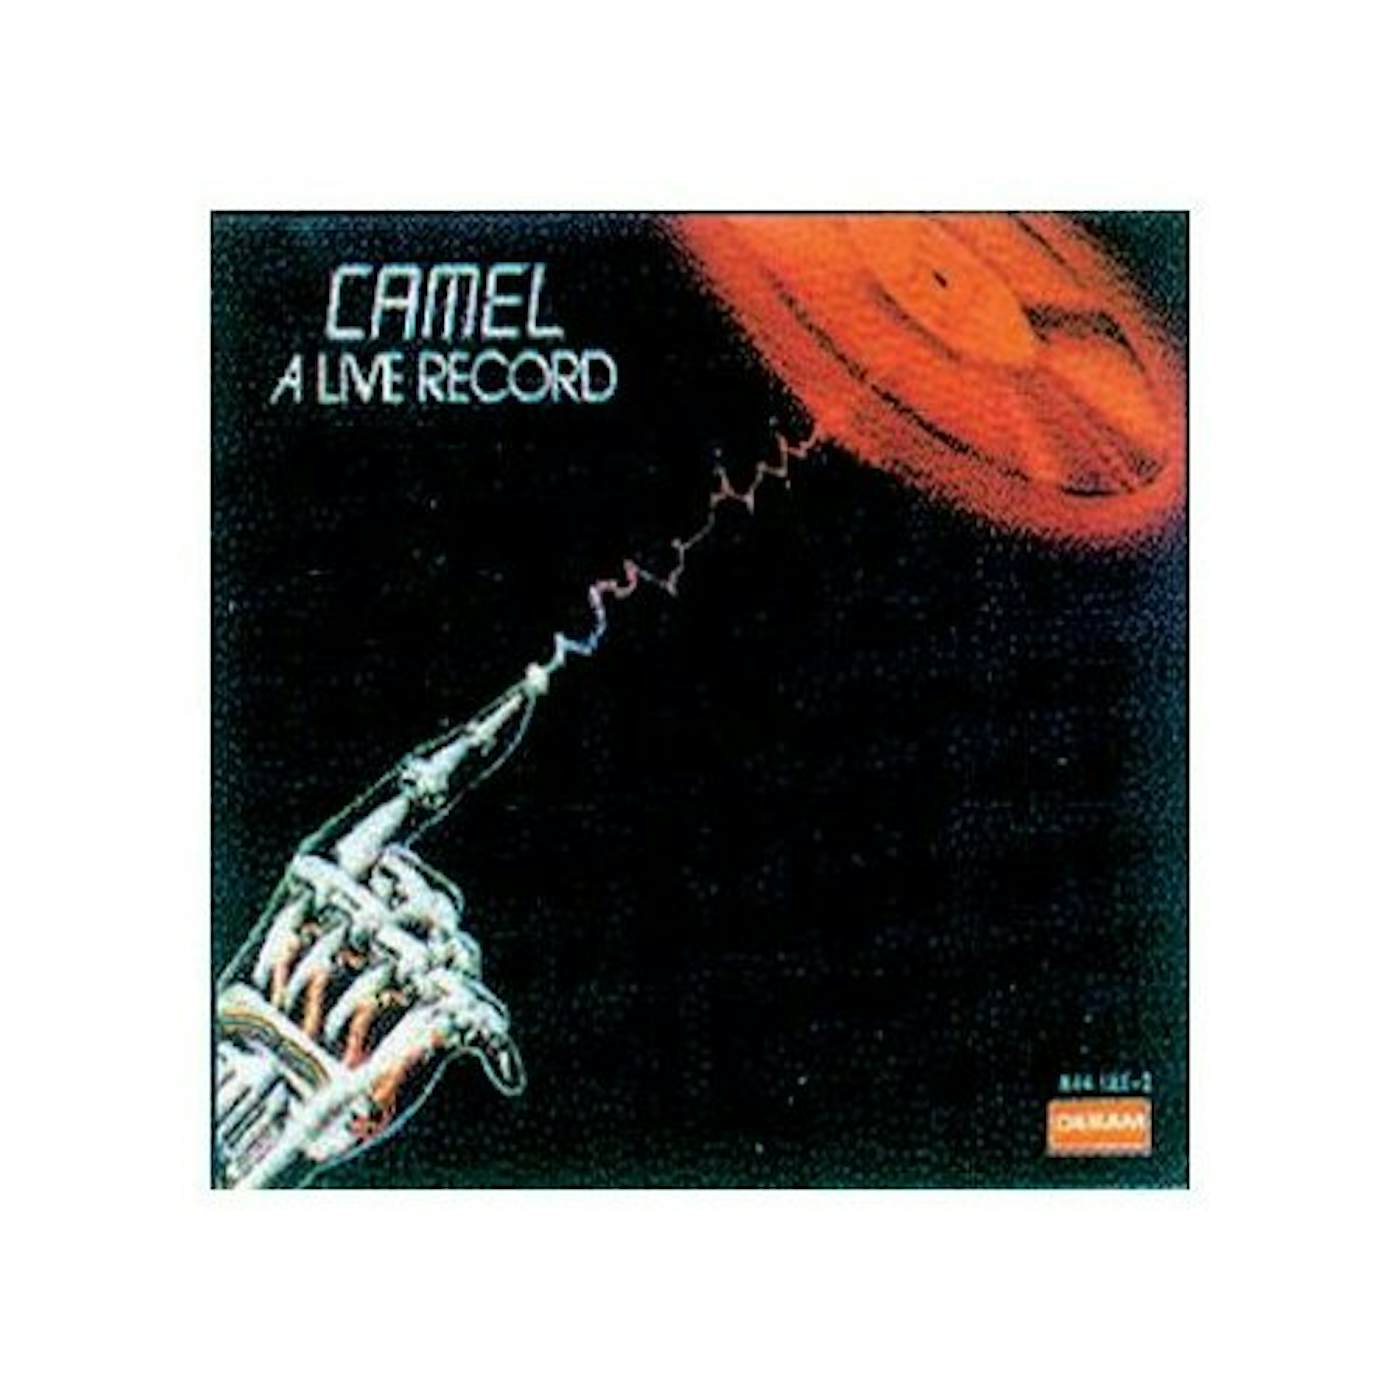 Camel LIVE RECORD - ENGLAND CD